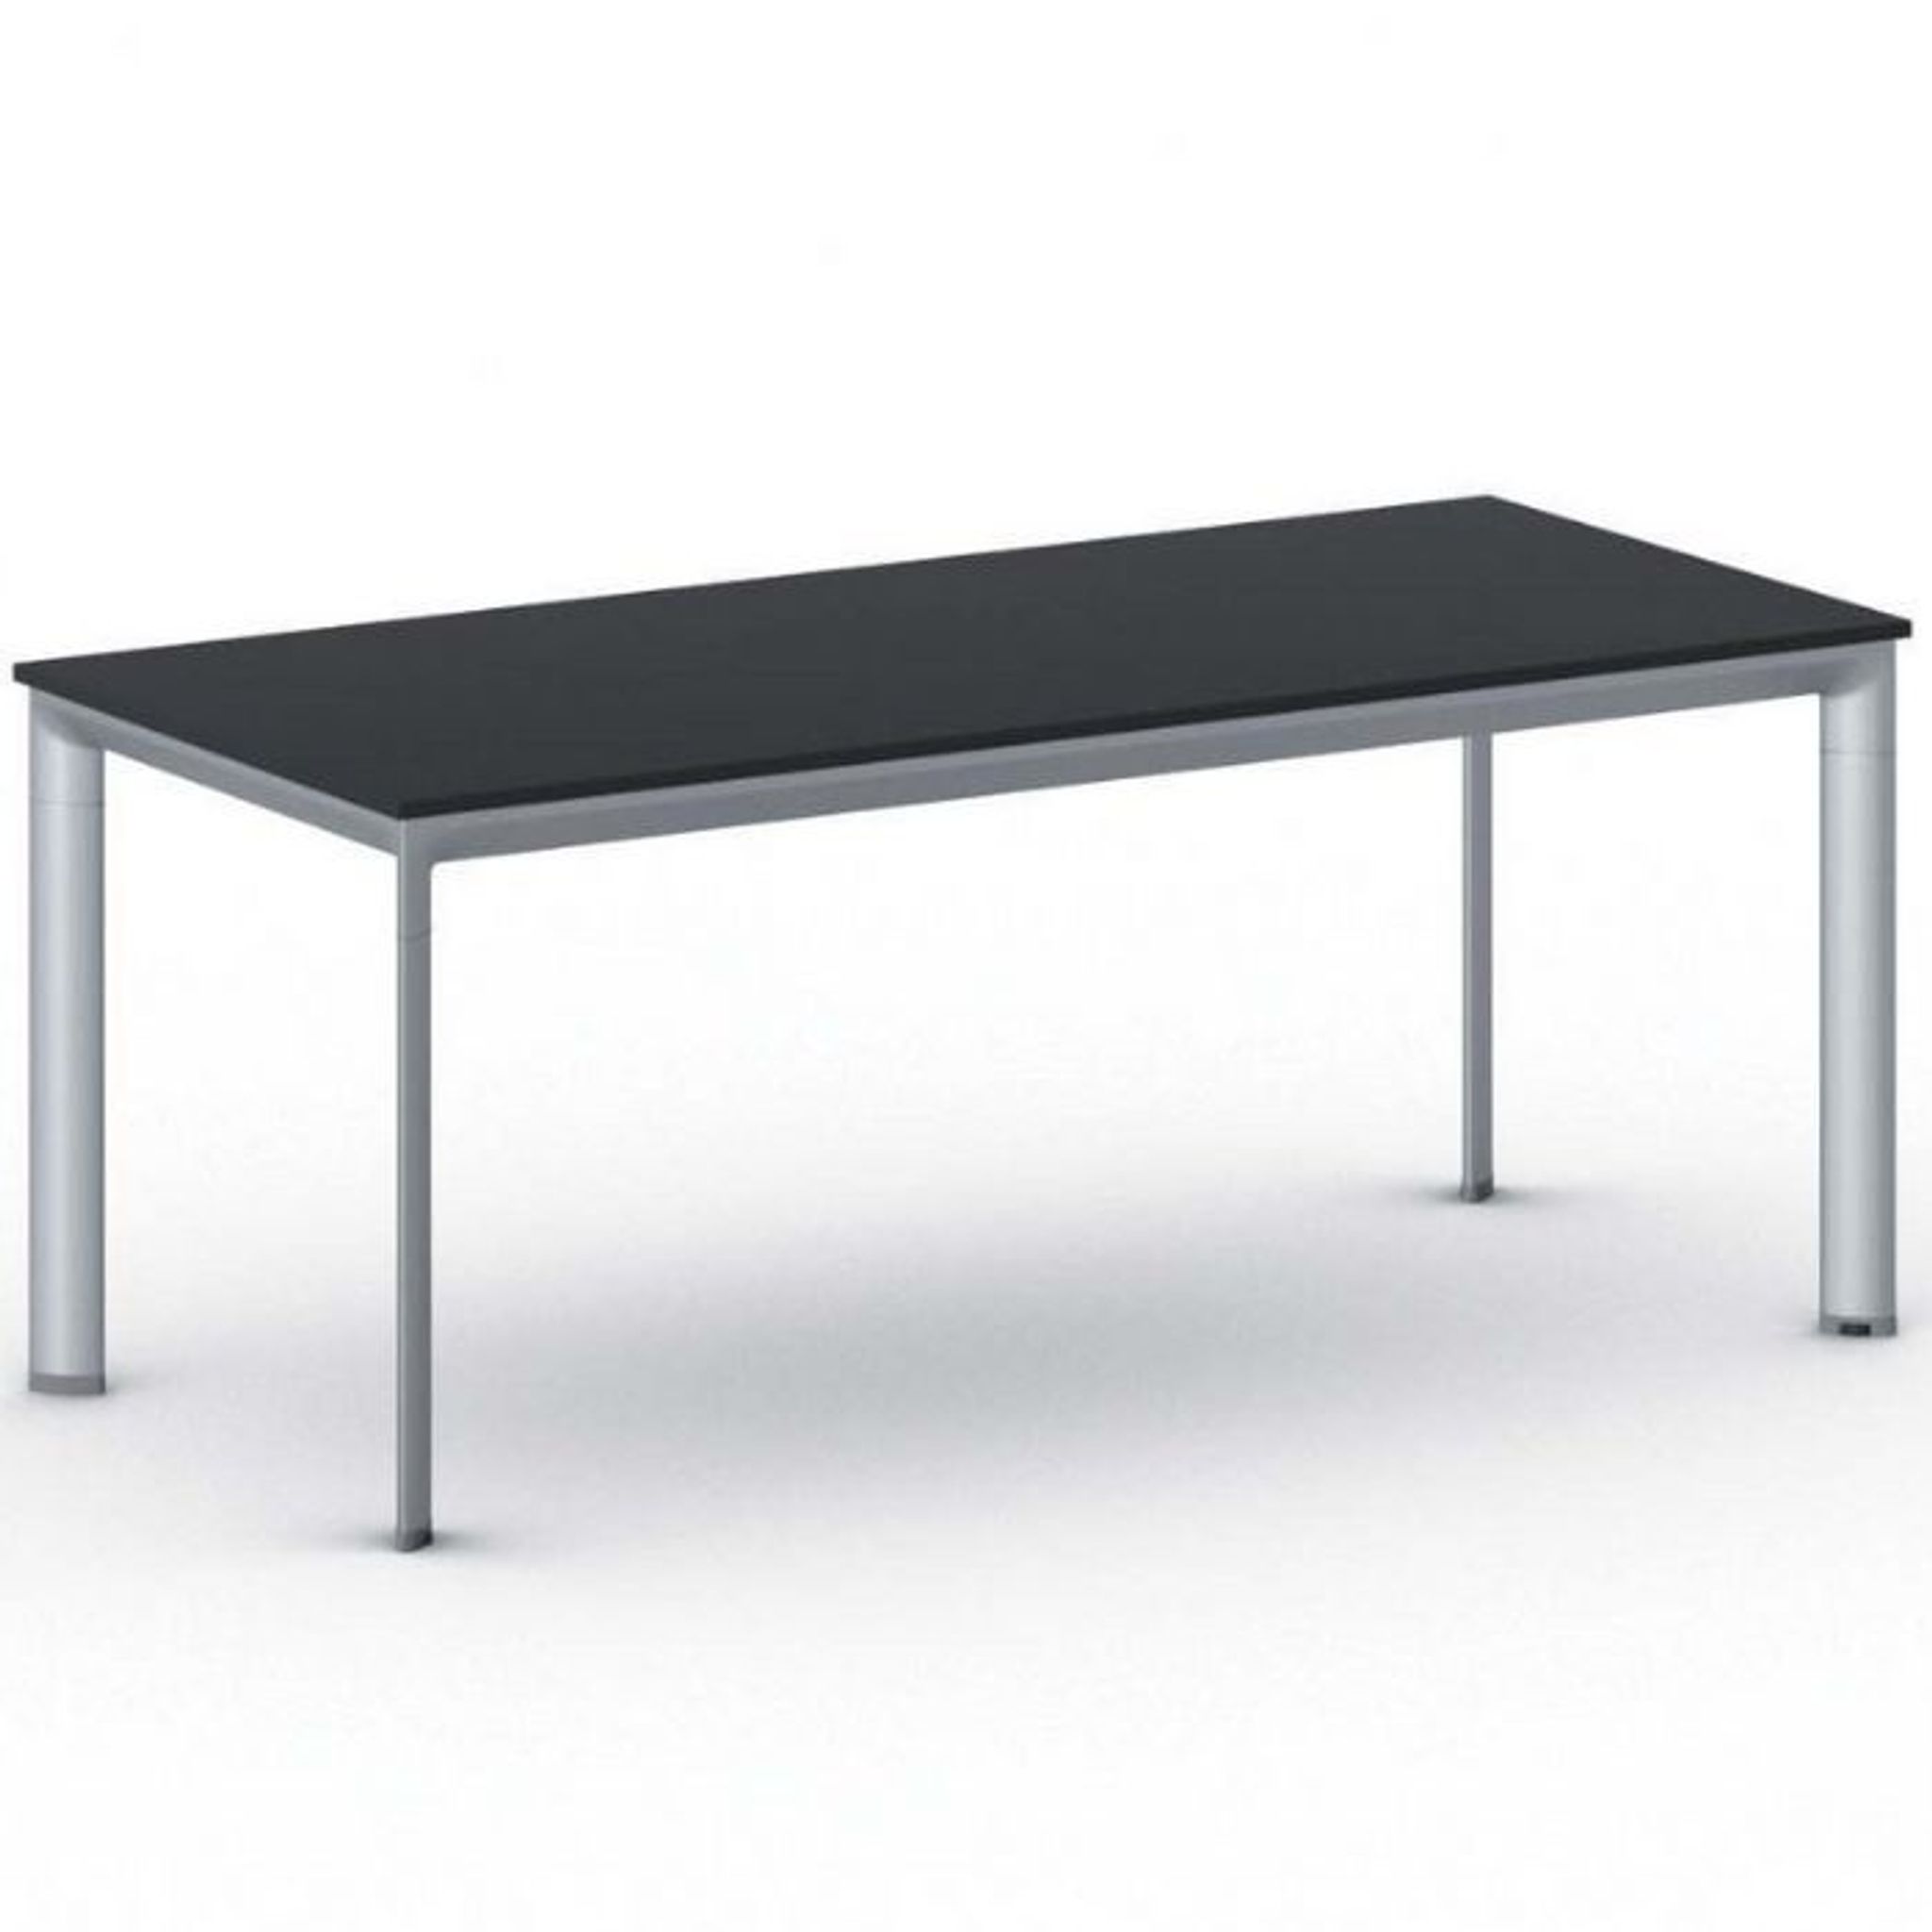 Konferenztisch, Besprechungstisch PRIMO INVITATION 1800 x 800 mm, graues Fußgestell, Graphit